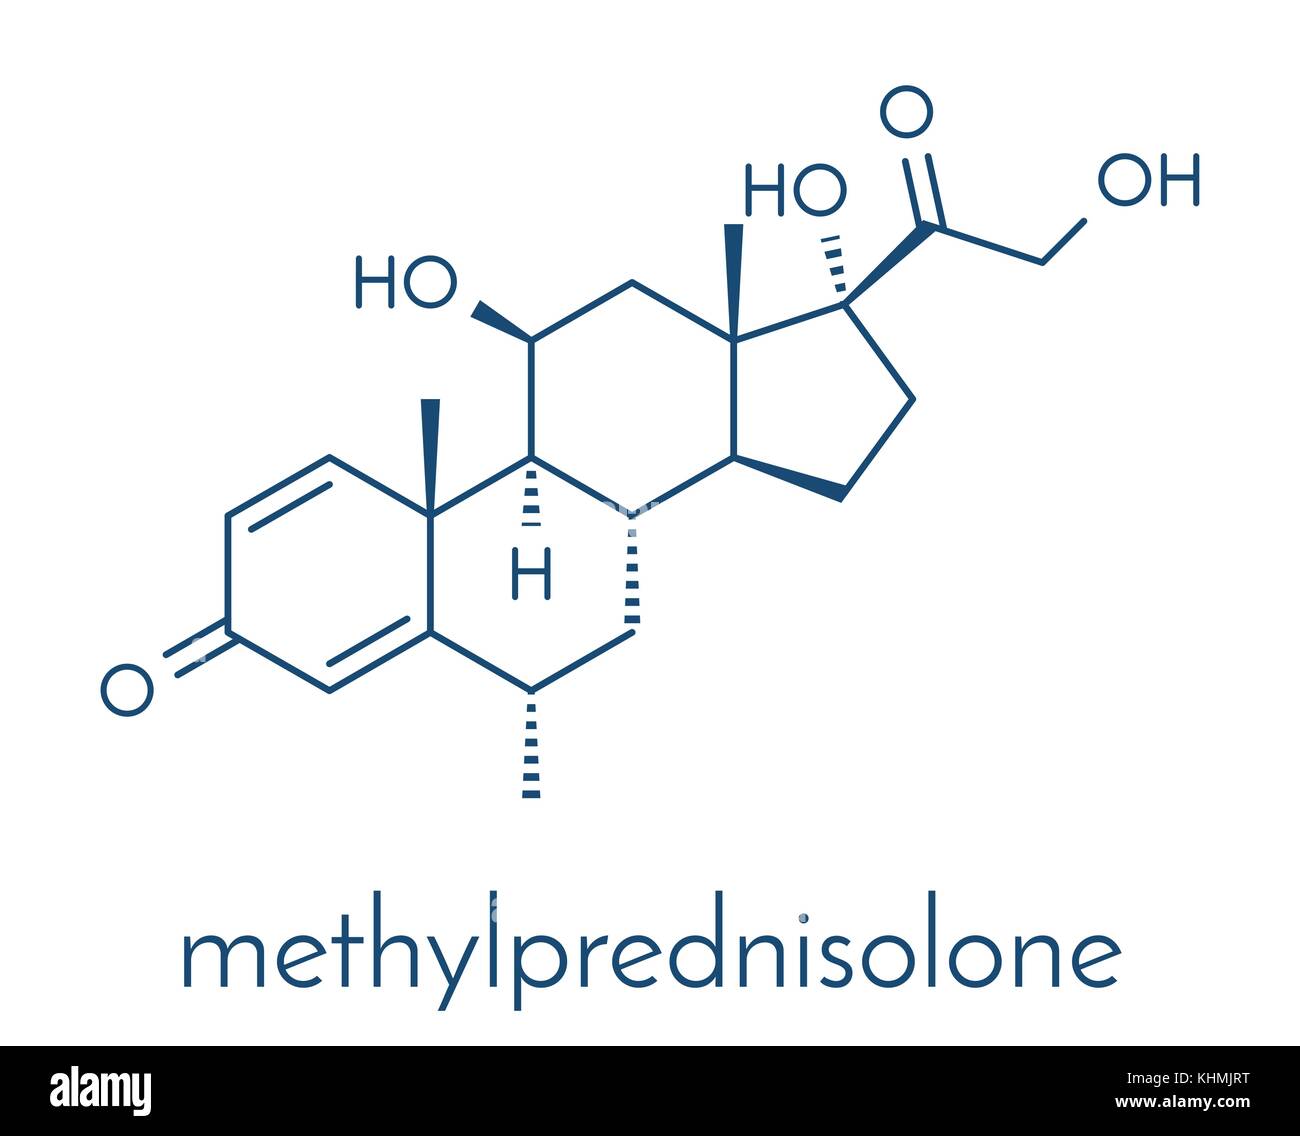 Methylprednisolone immagini e fotografie stock ad alta risoluzione - Alamy